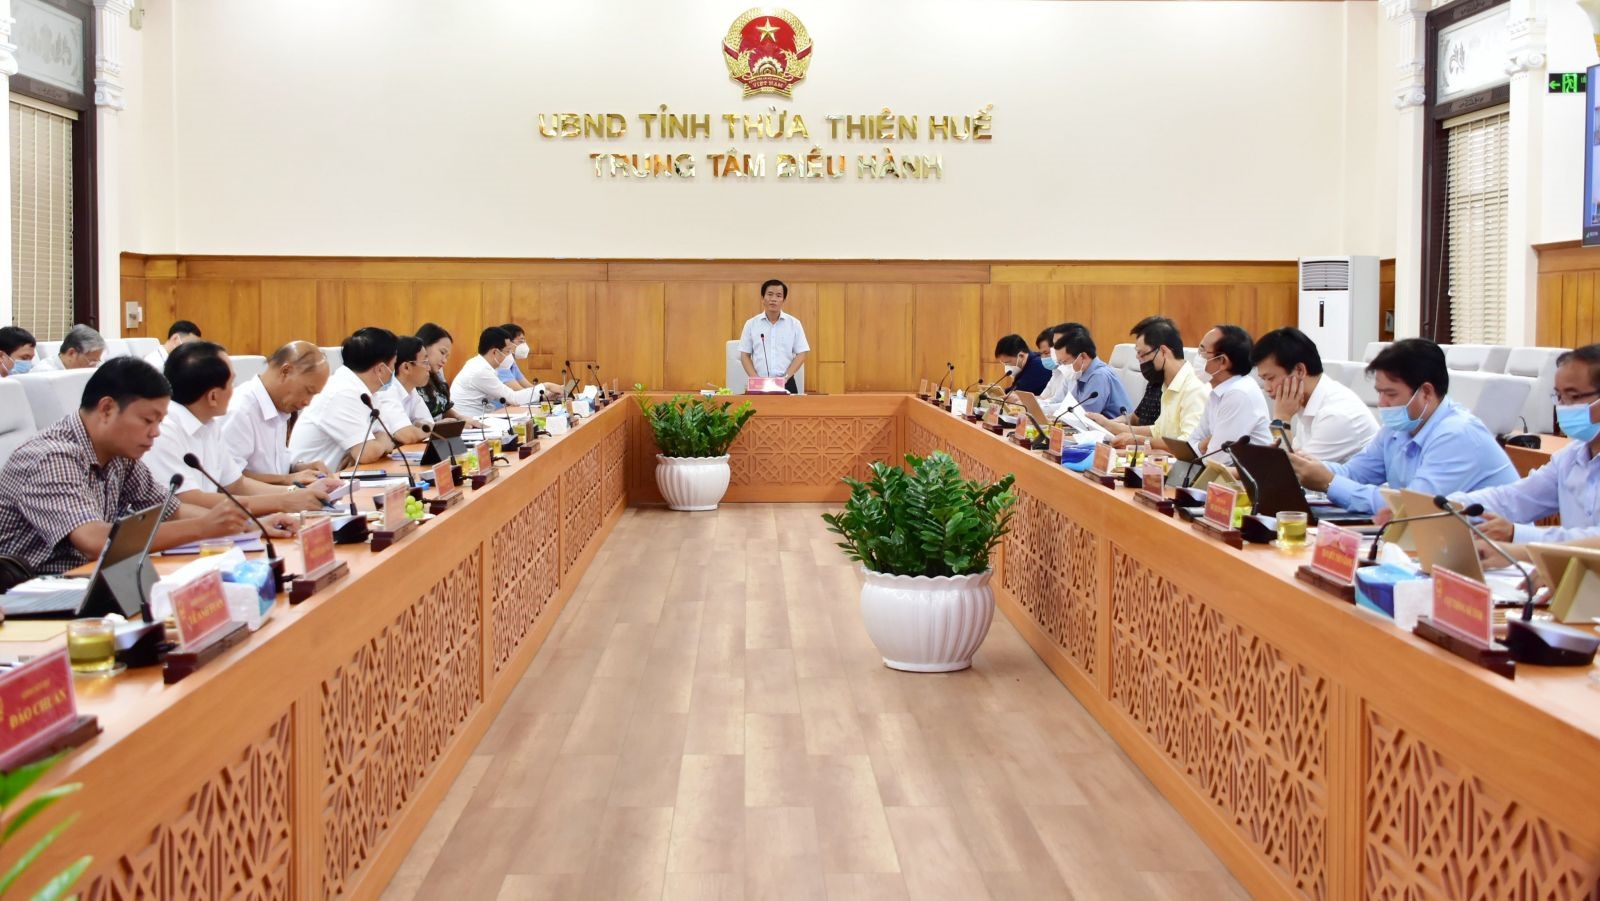 UBND tỉnh Thừa Thiên Huế tổ chức cuộc họp đánh giá tình hình kinh tế - xã hội  9 tháng năm 2021; nhiệm vụ trọng tâm 3 tháng cuối năm. Ảnh: Báo Thừa Thiên Huế